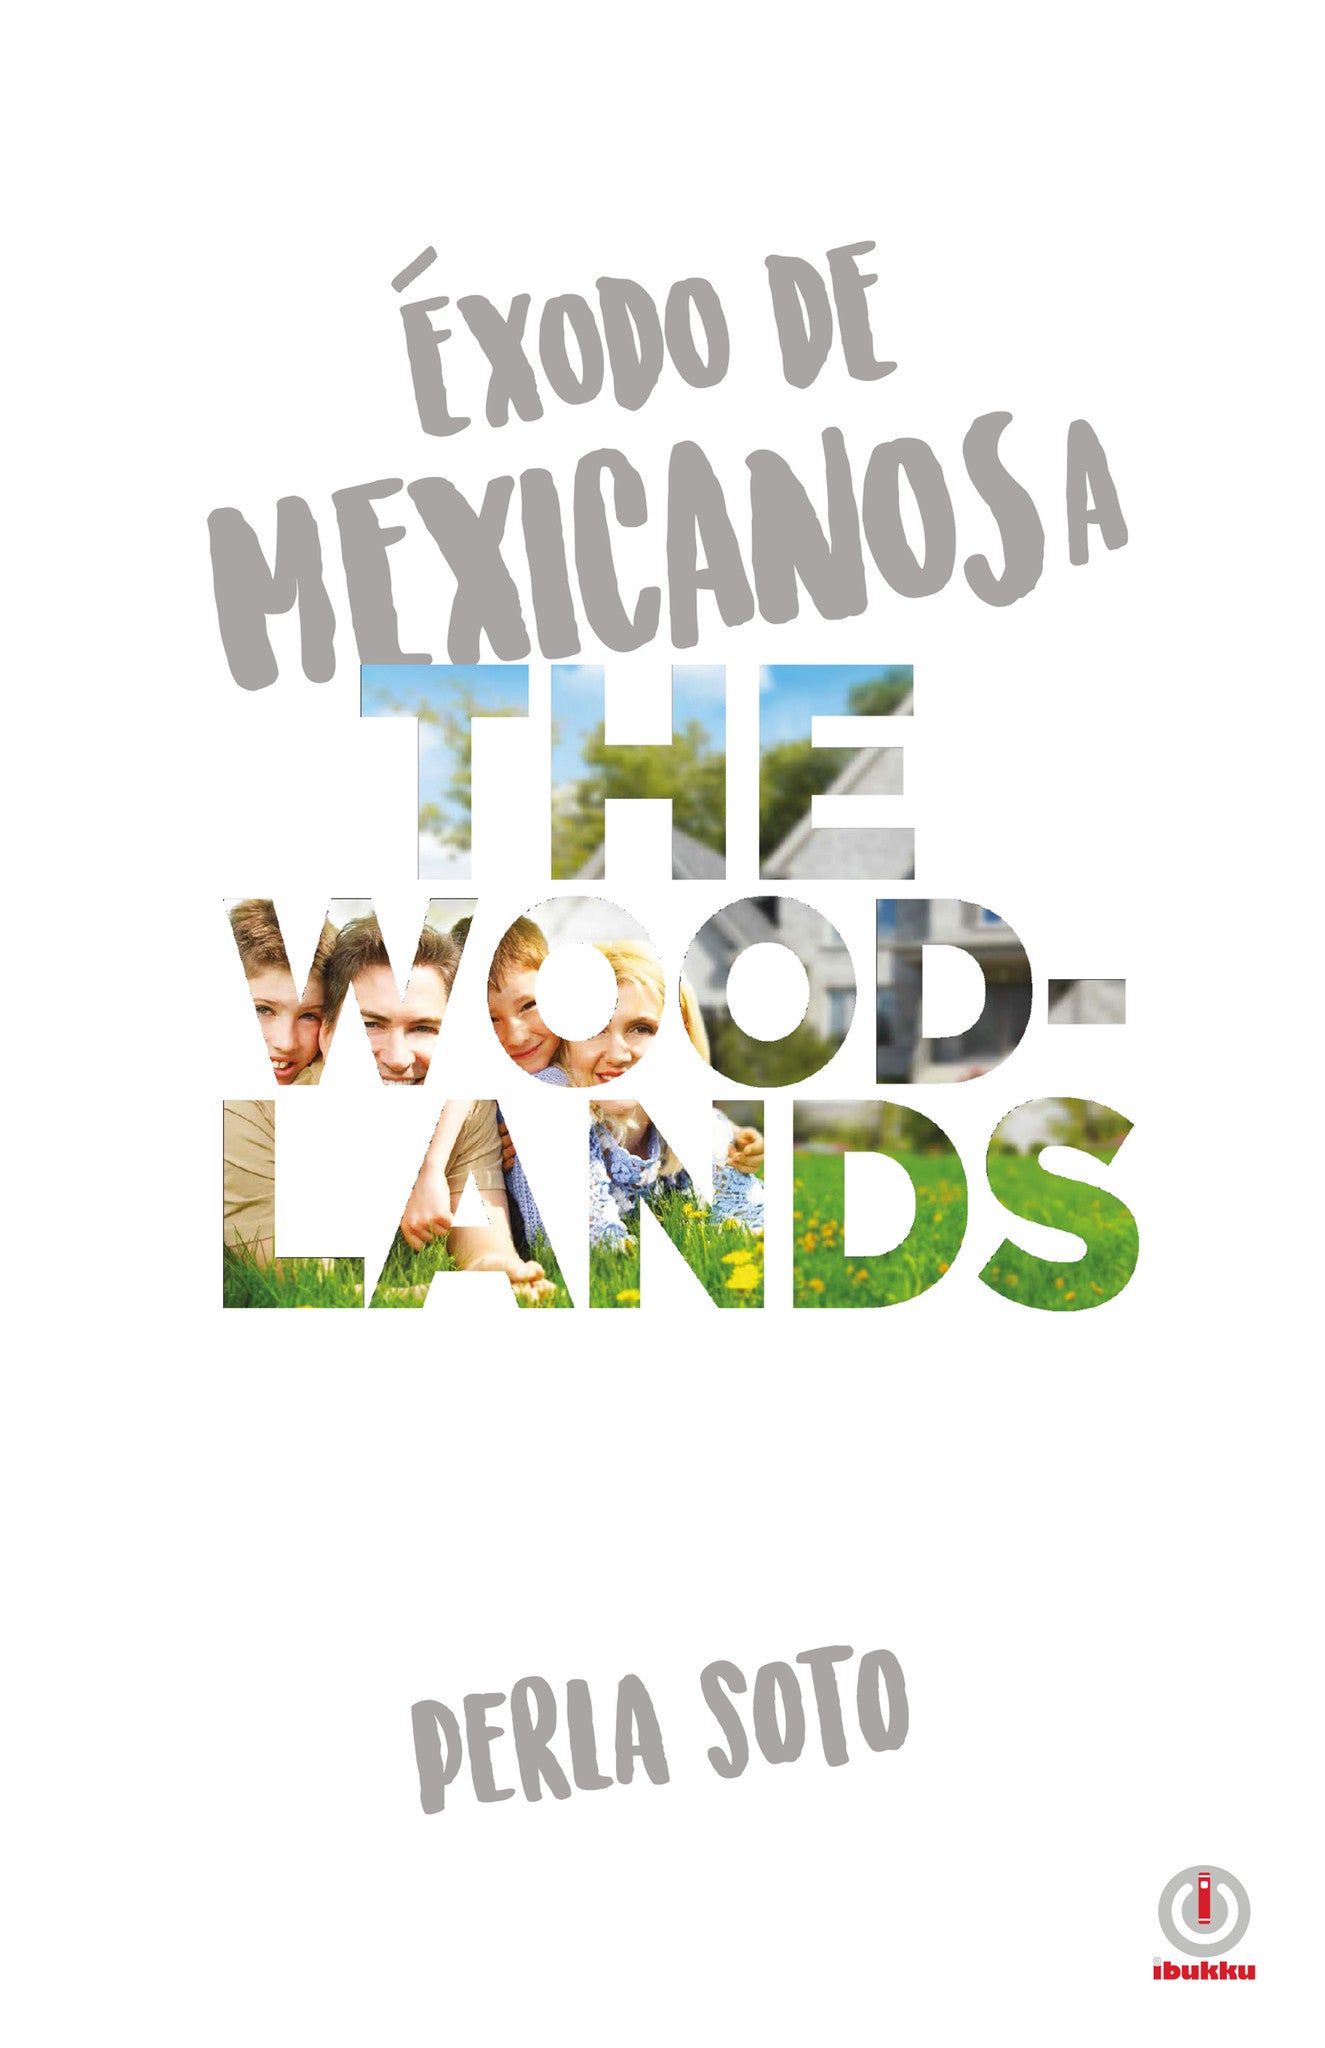 Exodo de mexicanos a The Woodlands - ibukku, LLC